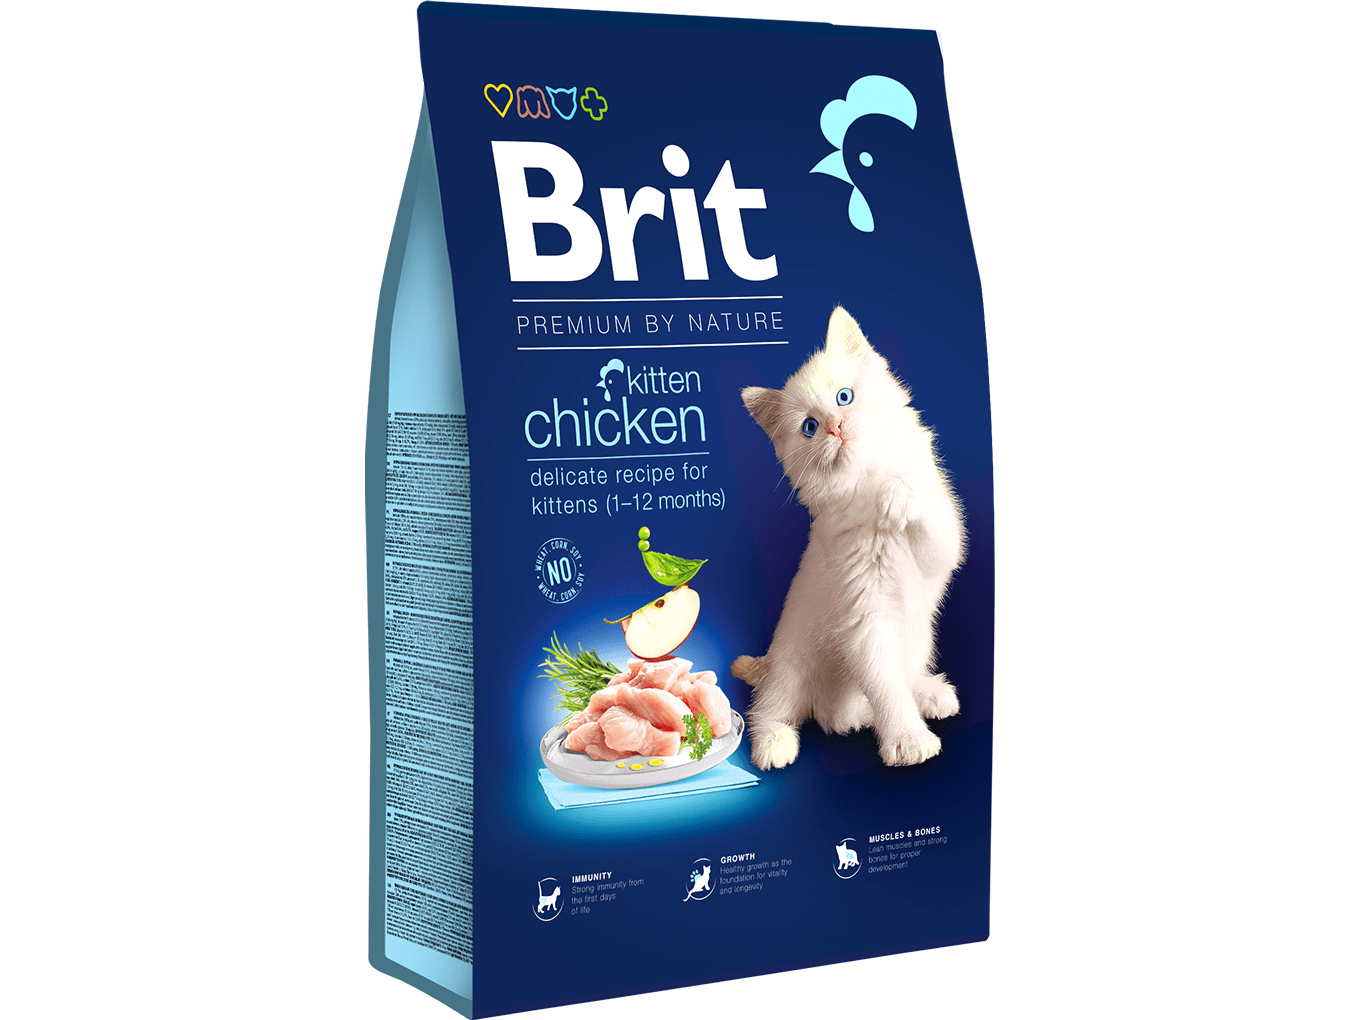 Brit Premium by Nature Cat. Kitten Chicken, 8kg